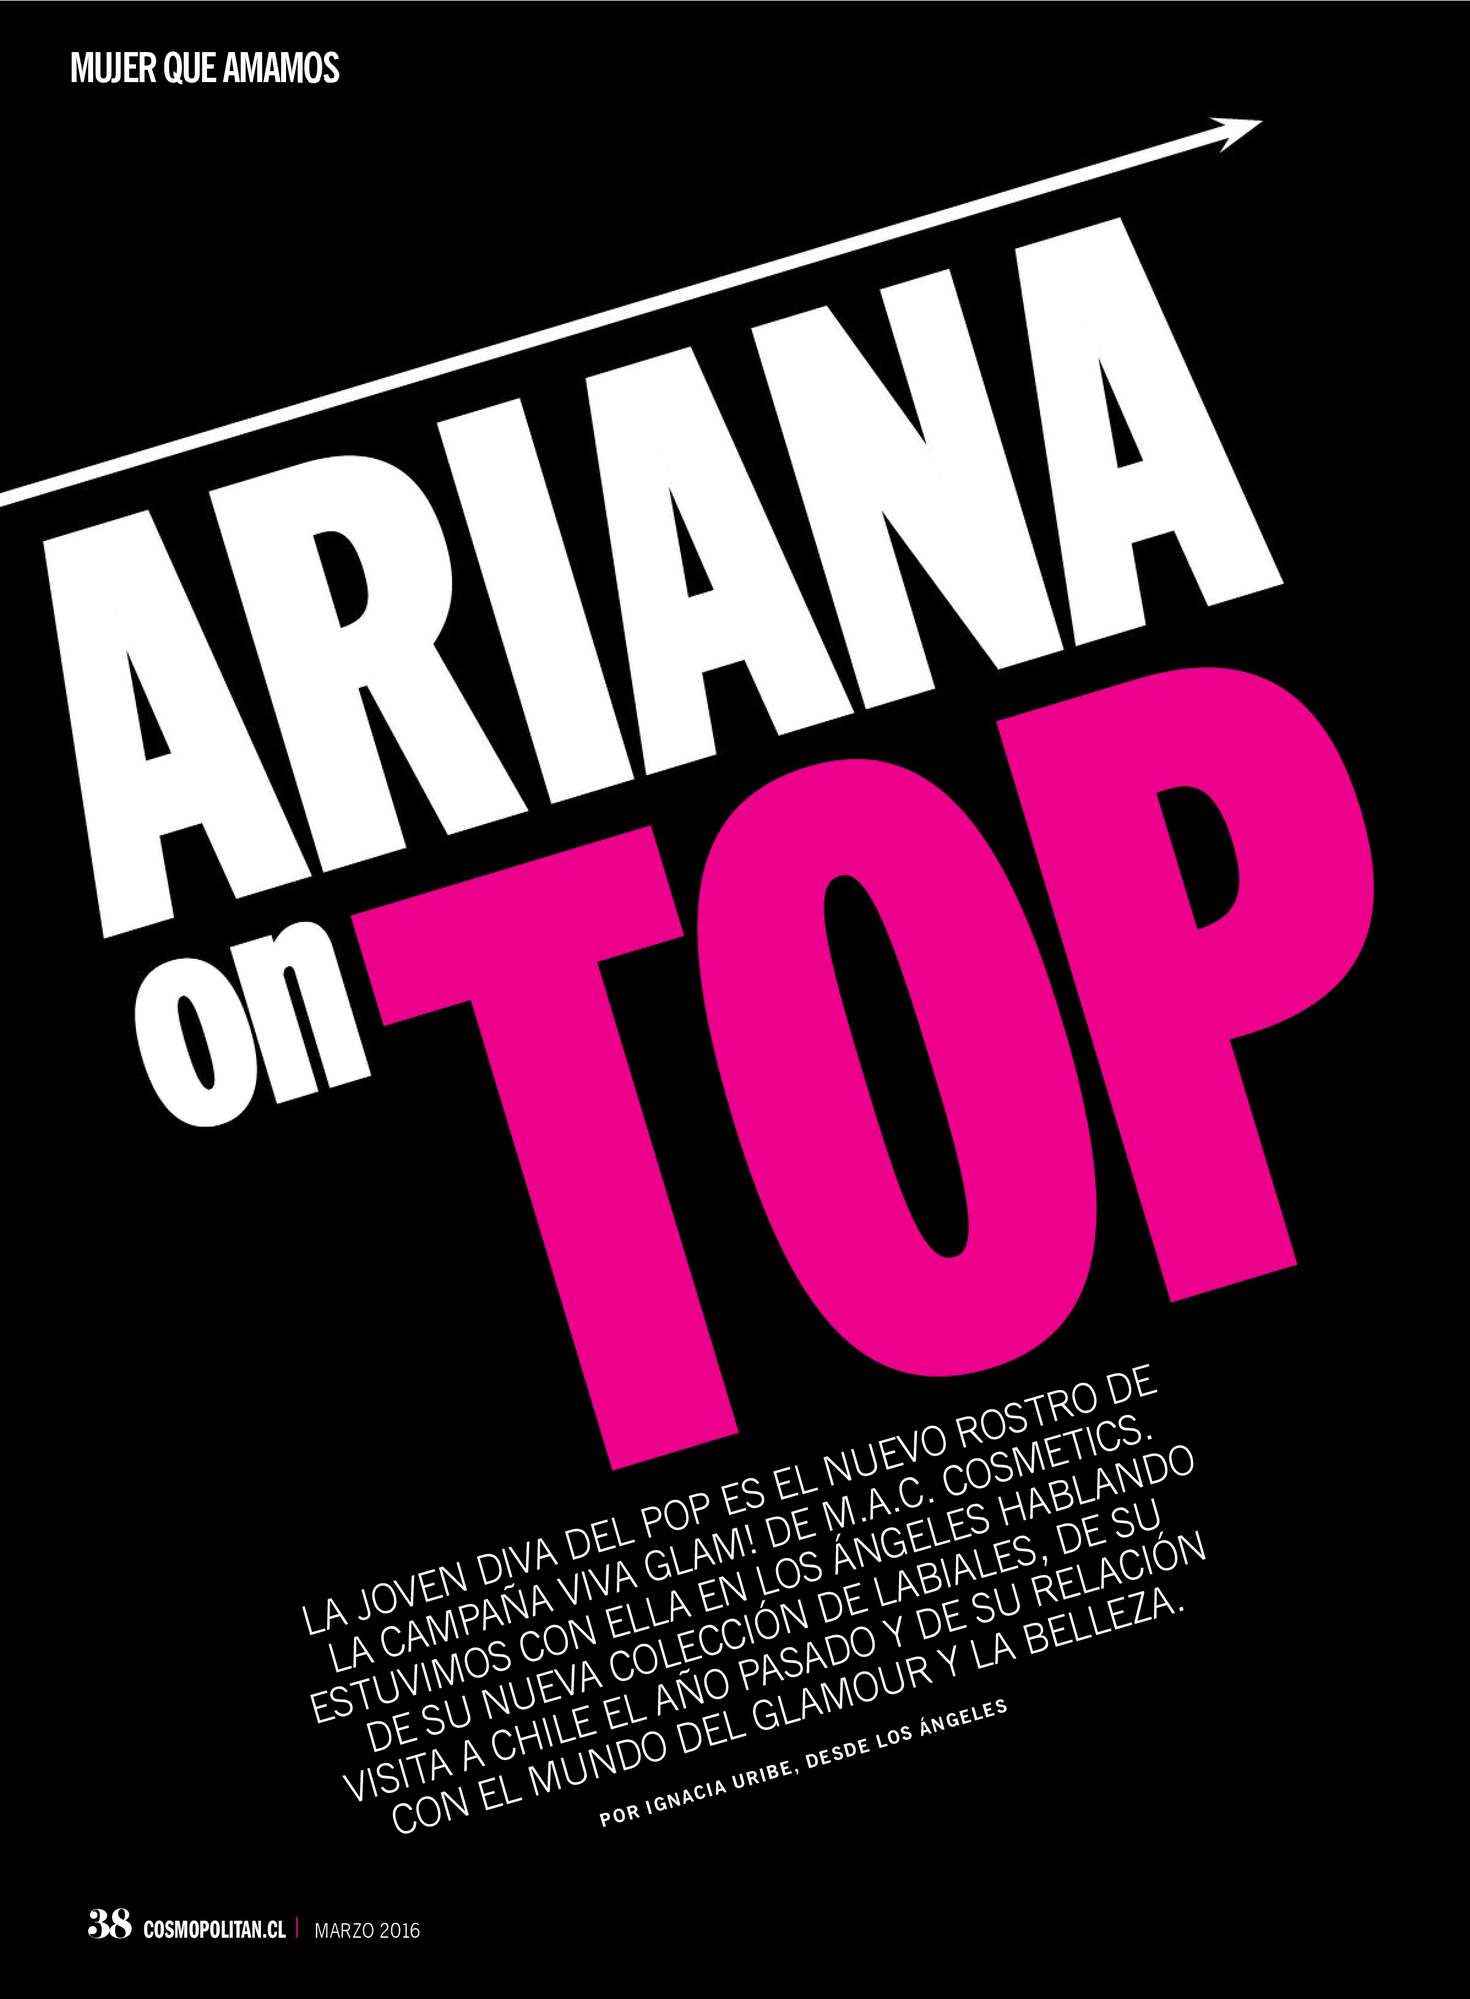 Ariana Grande â€“ Cosmopolitan Chile (March 2016)